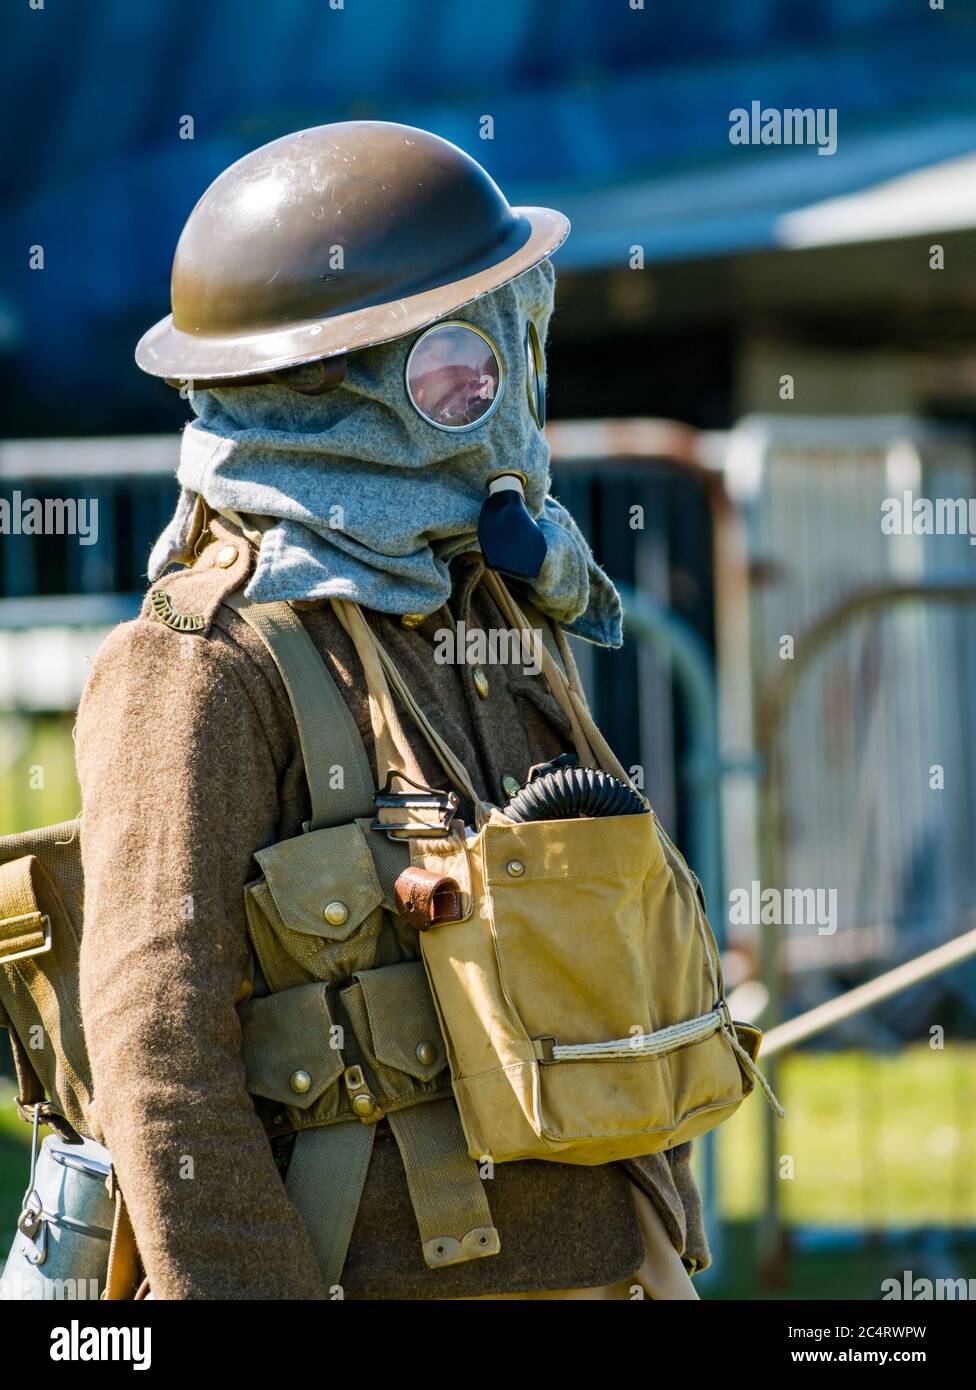 ww1 gas mask soldier wikimedia